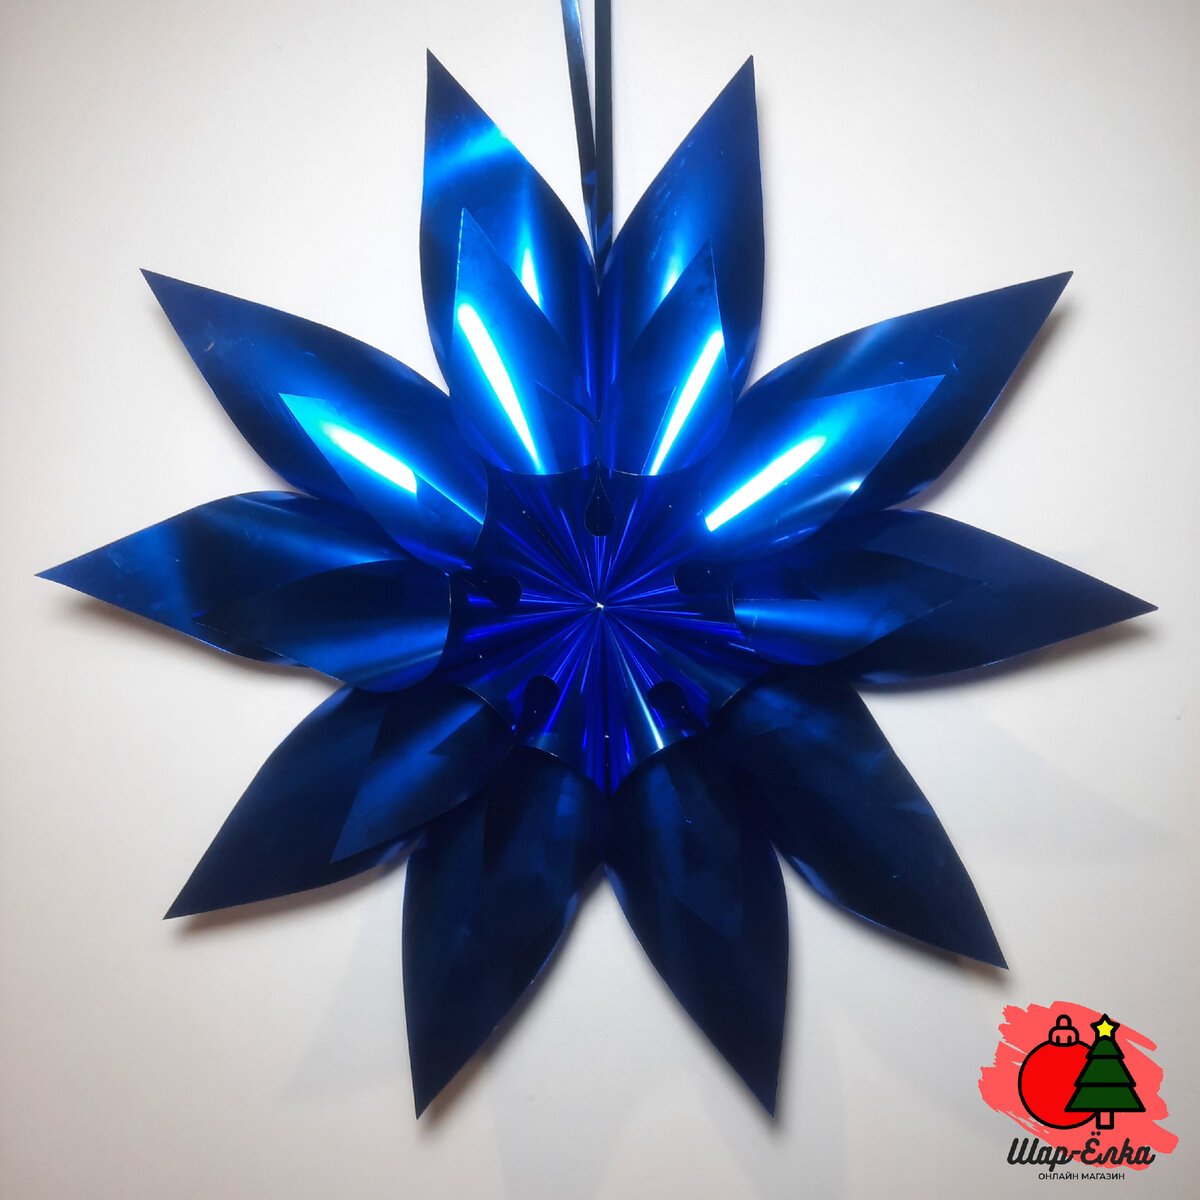 Новогоднее украшение "Звезда Голиаф" (Слана) синий